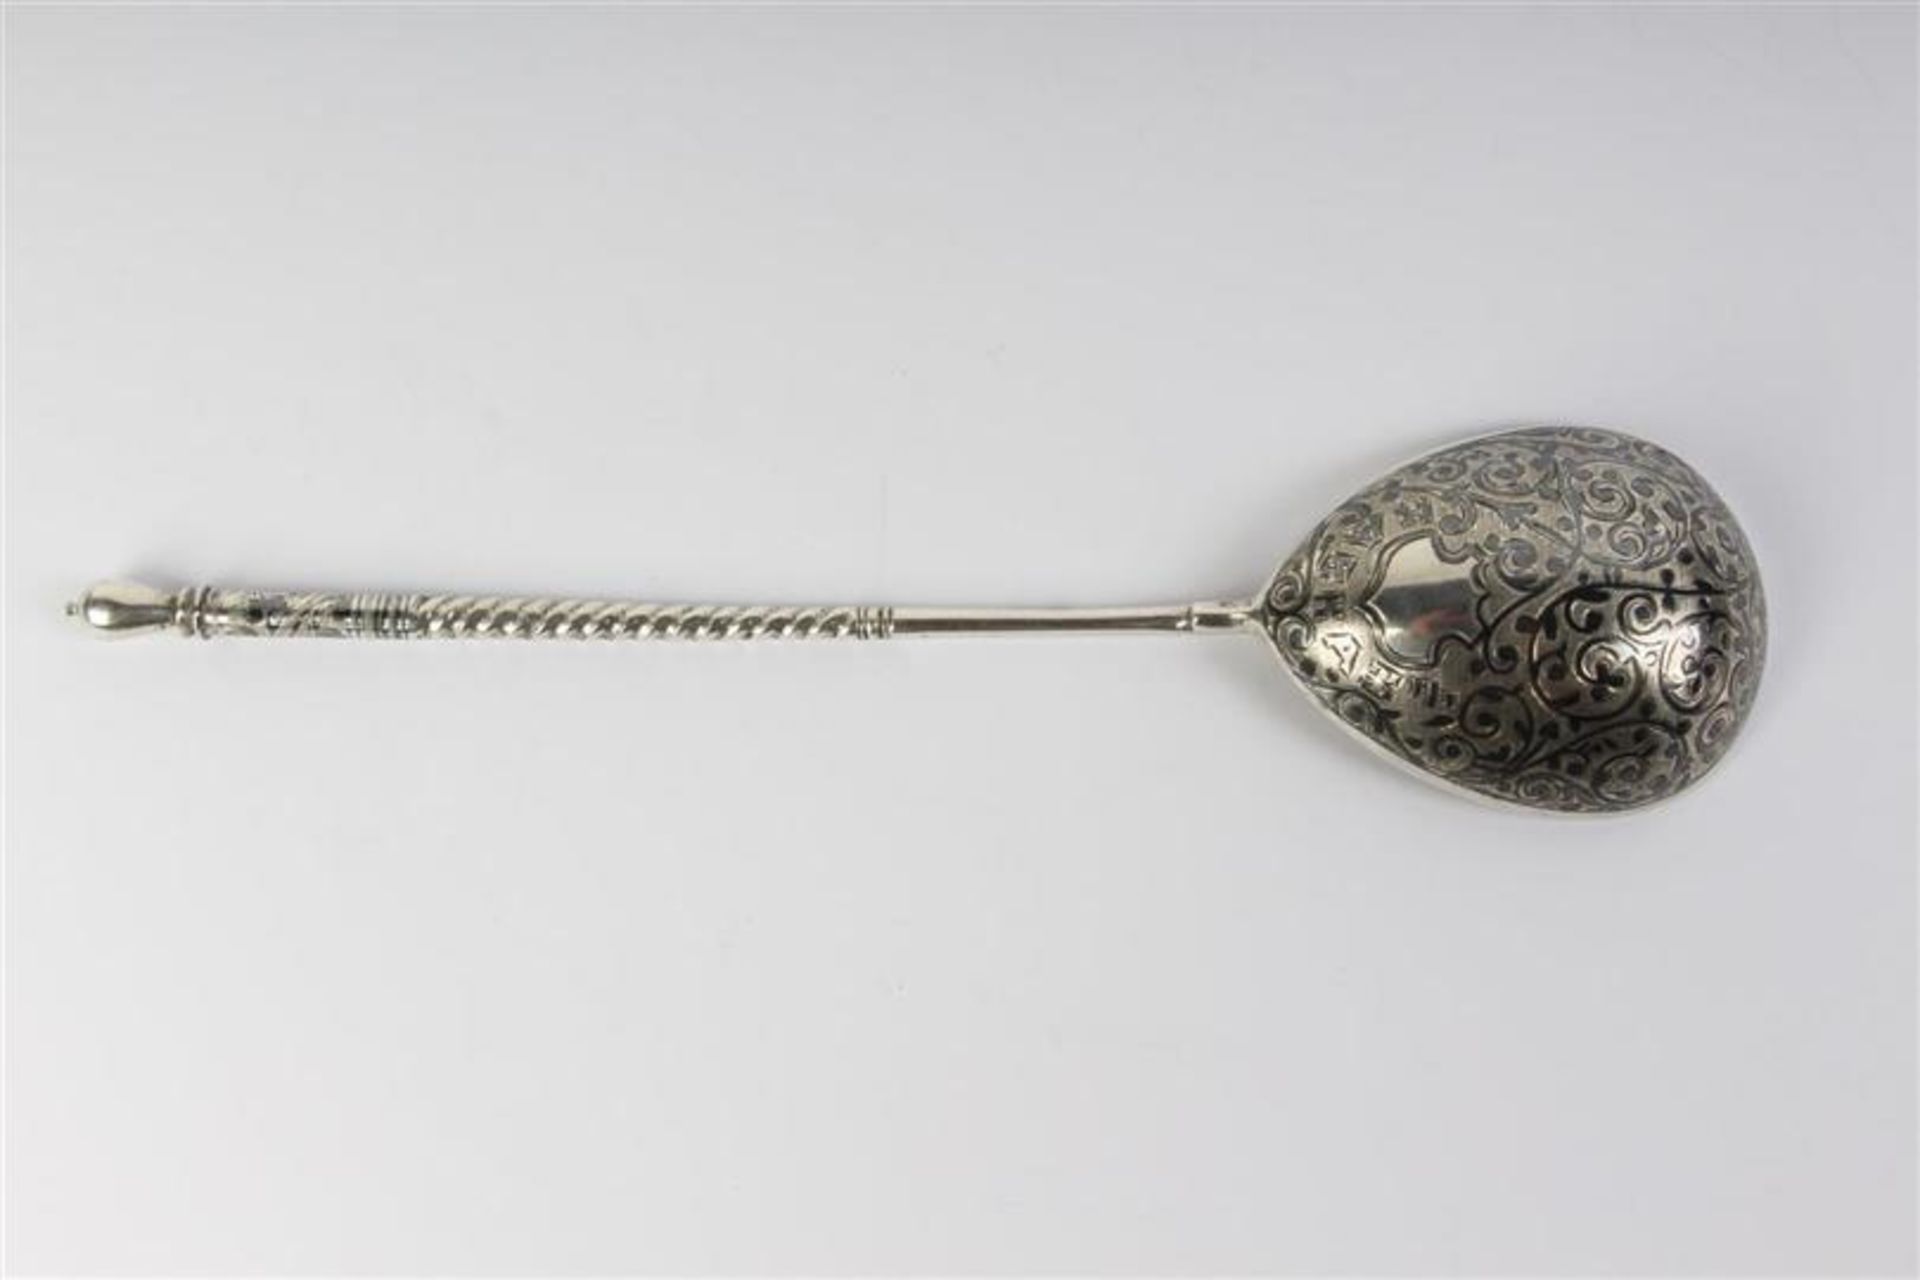 Zilveren lepel met niello, Rusland. Gewicht: 61.2 g. - Bild 4 aus 4